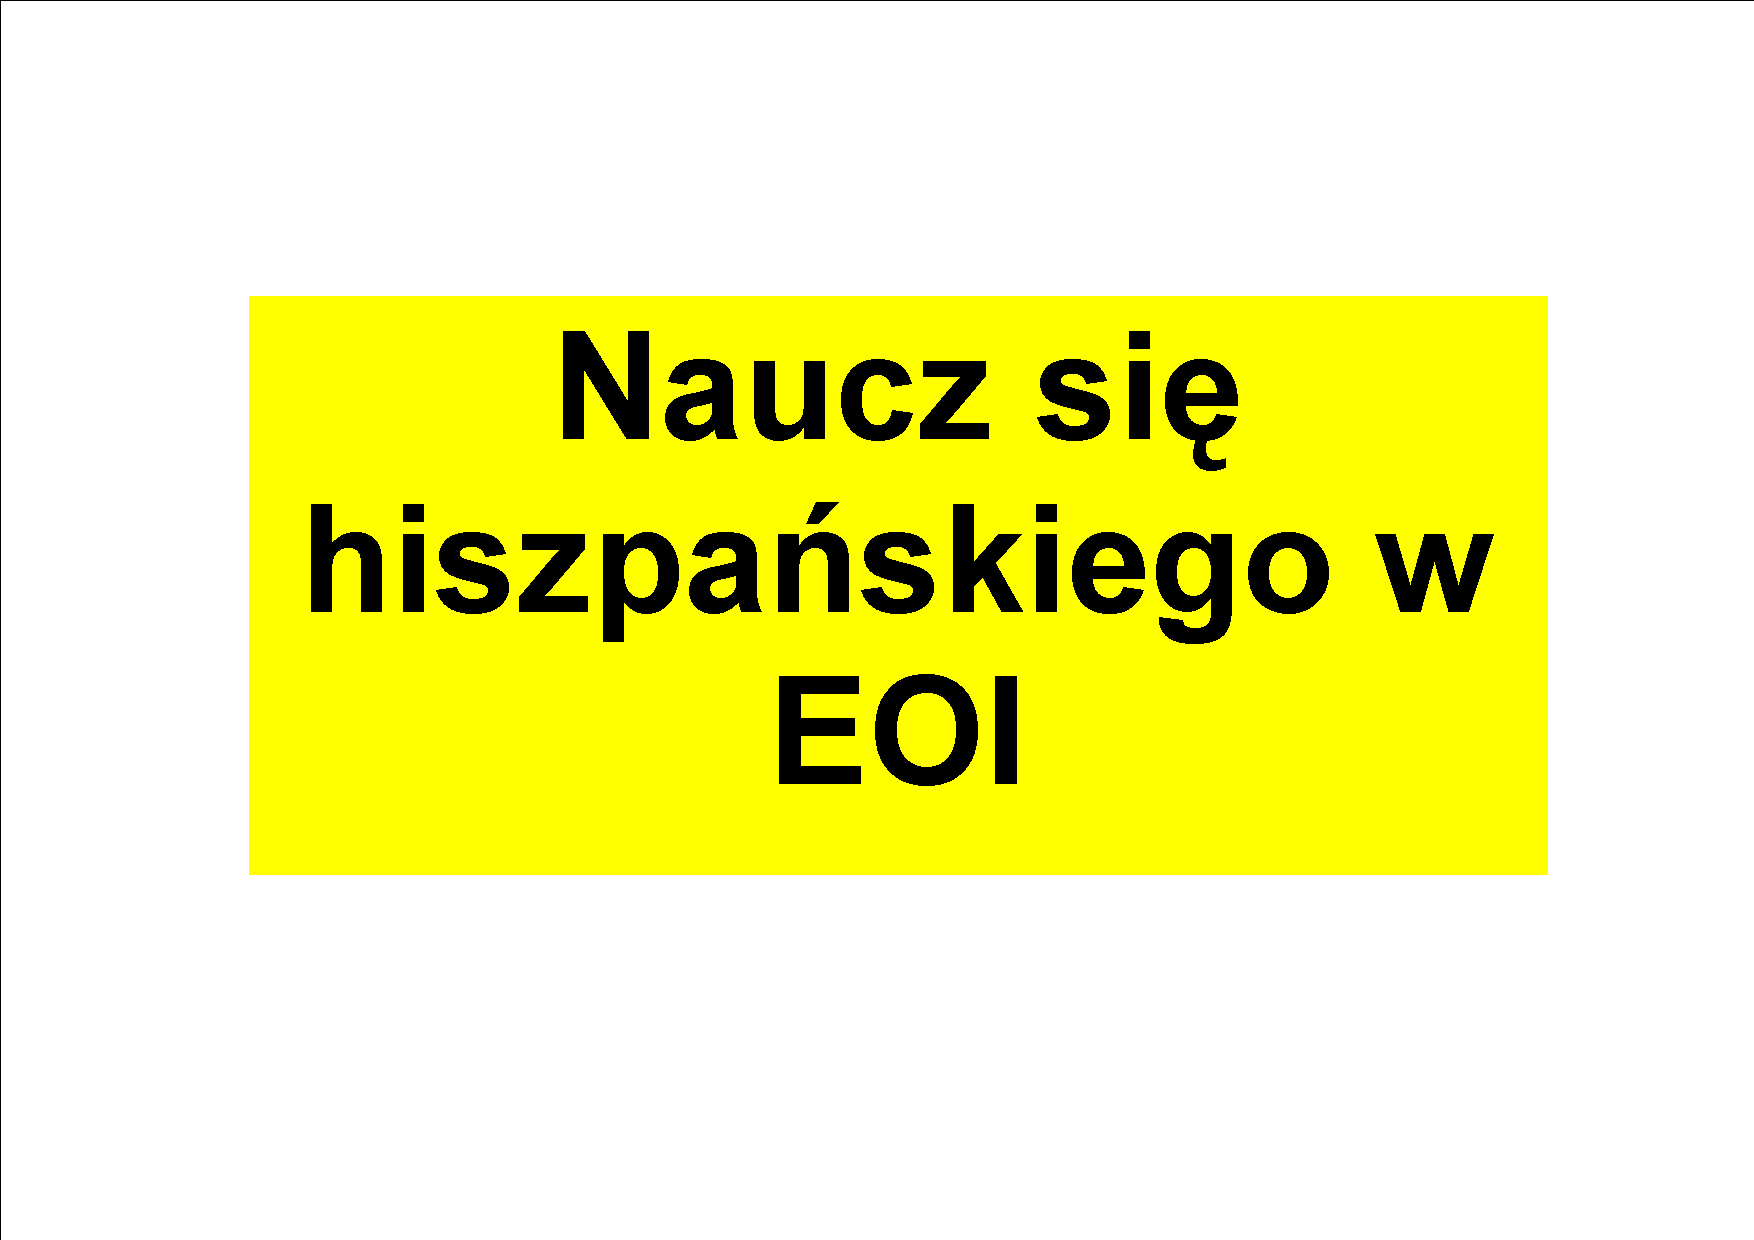 Traducción al polaco